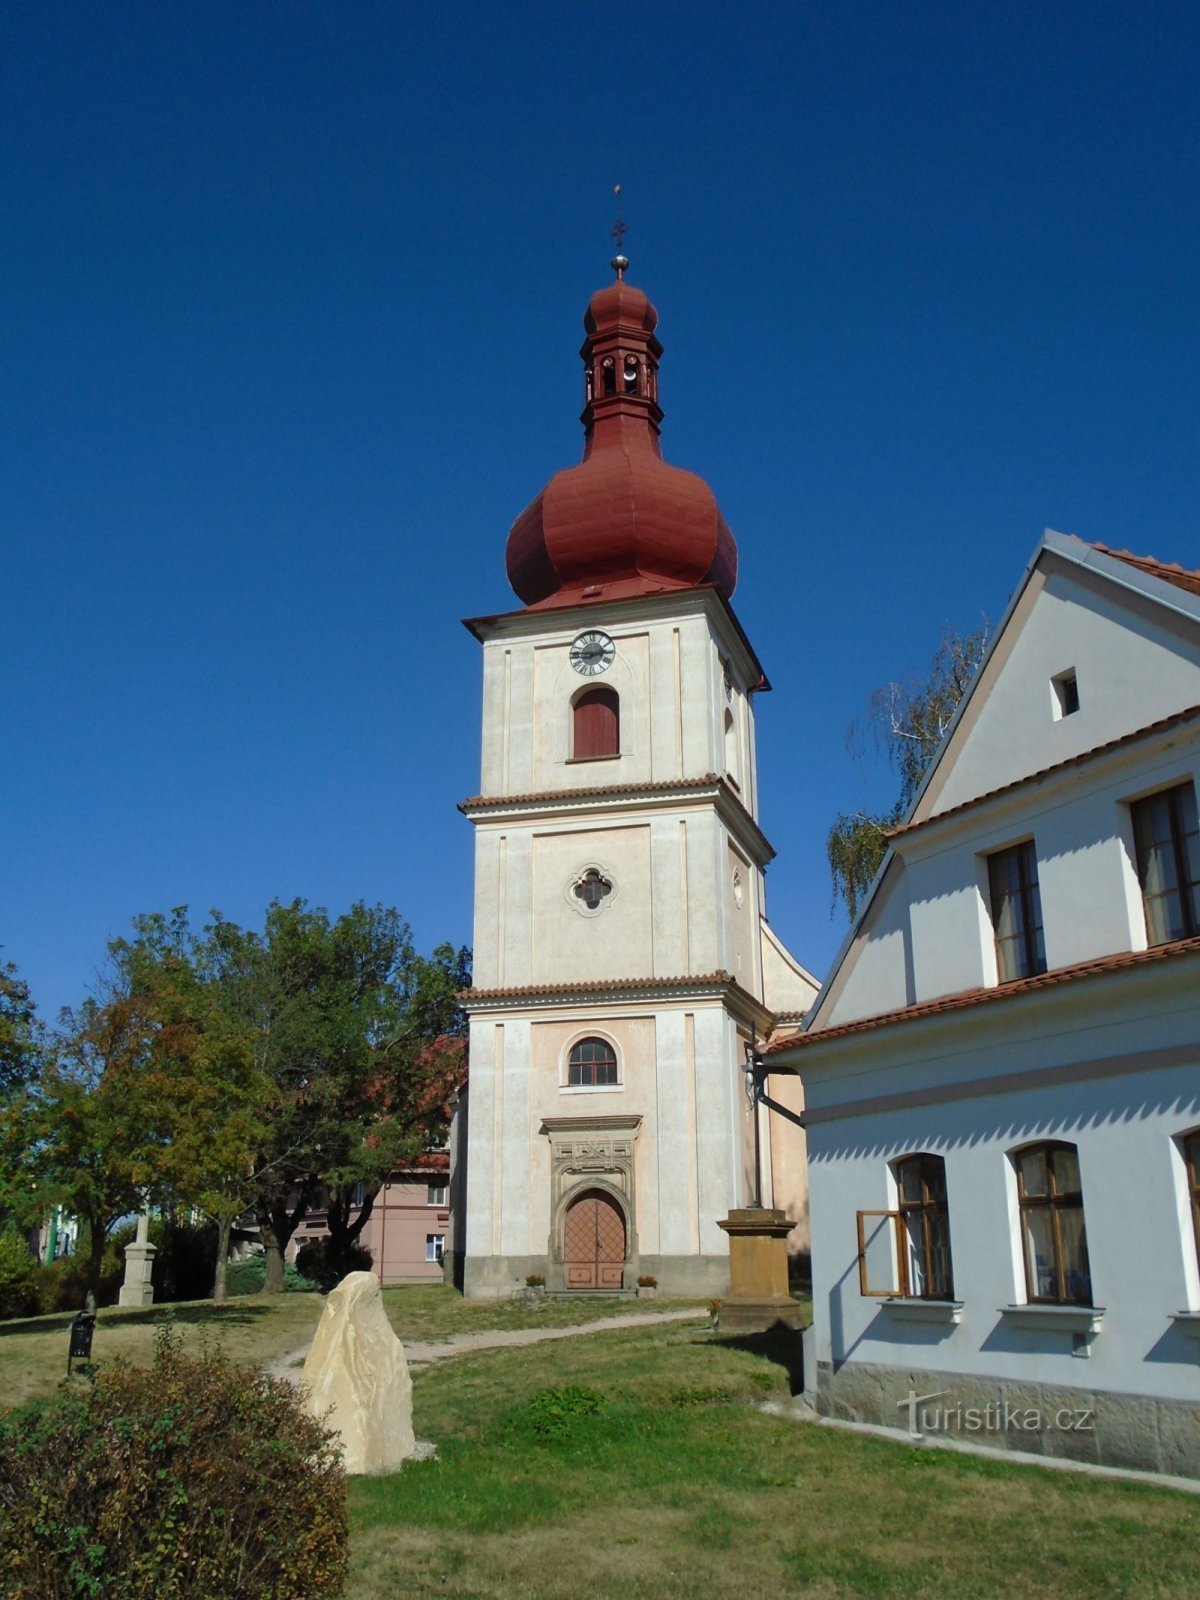 Церква св. Якуб (Jaroměř, 12.9.2018)